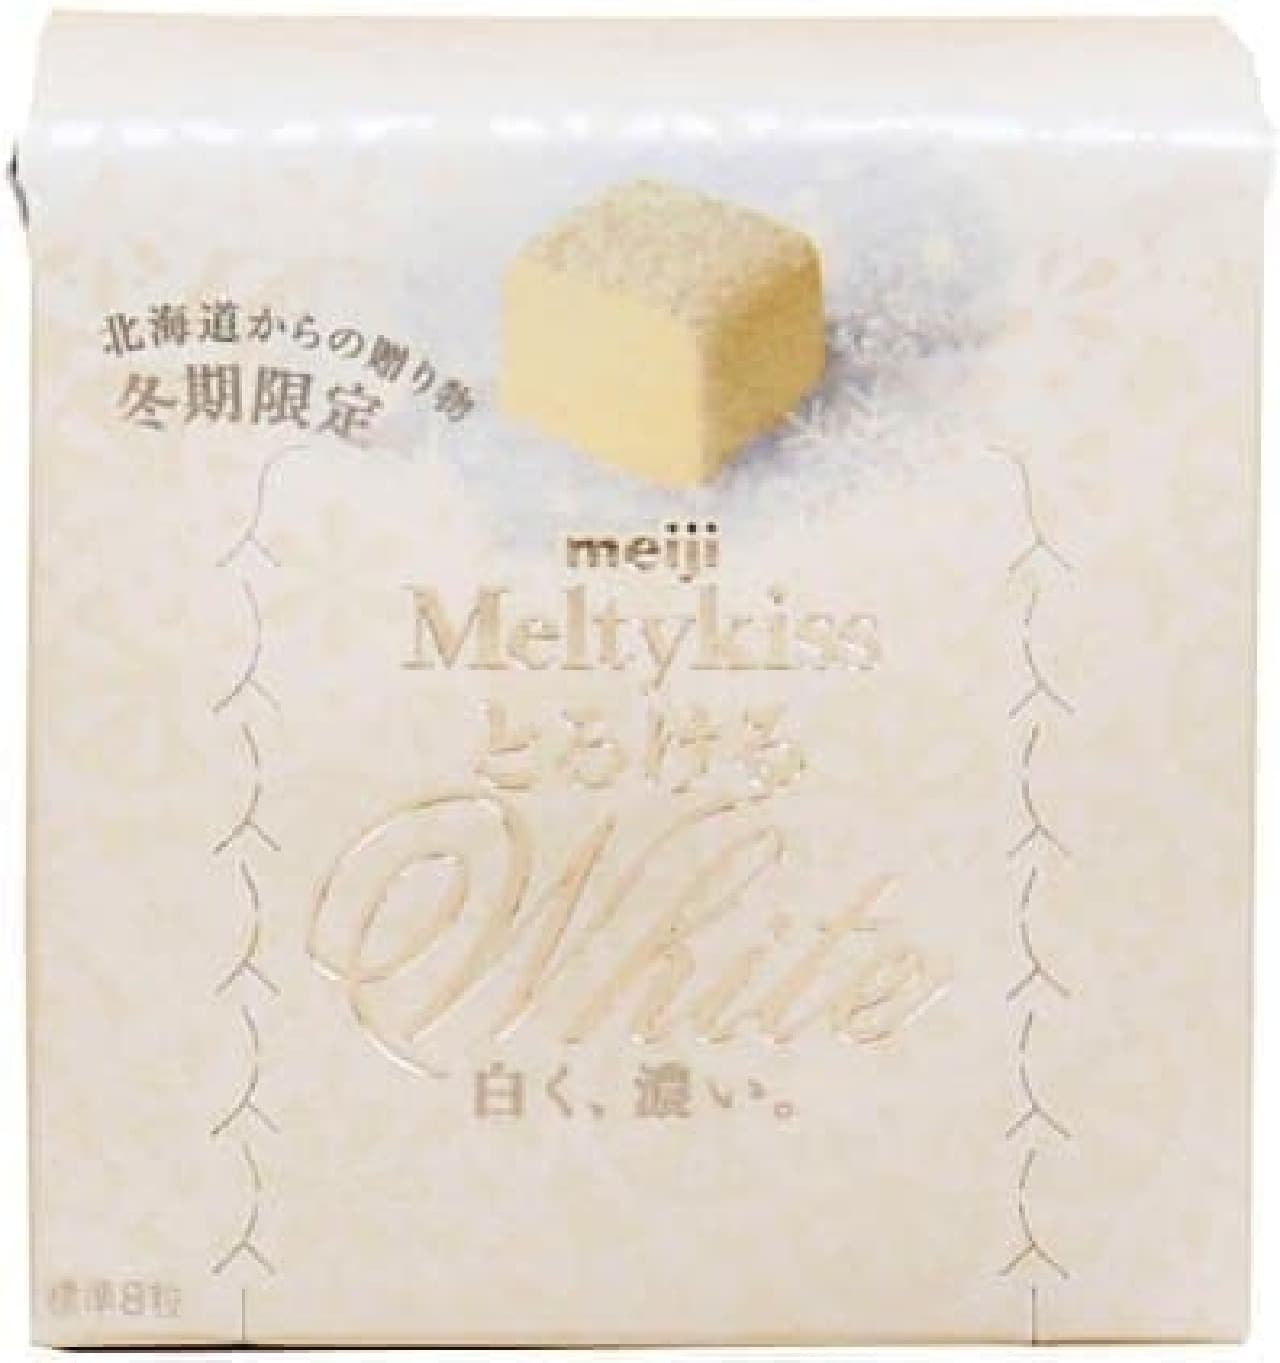 FamilyMart and Circle K, Sunkus Limited "Meiji Melty Kiss Melting White"